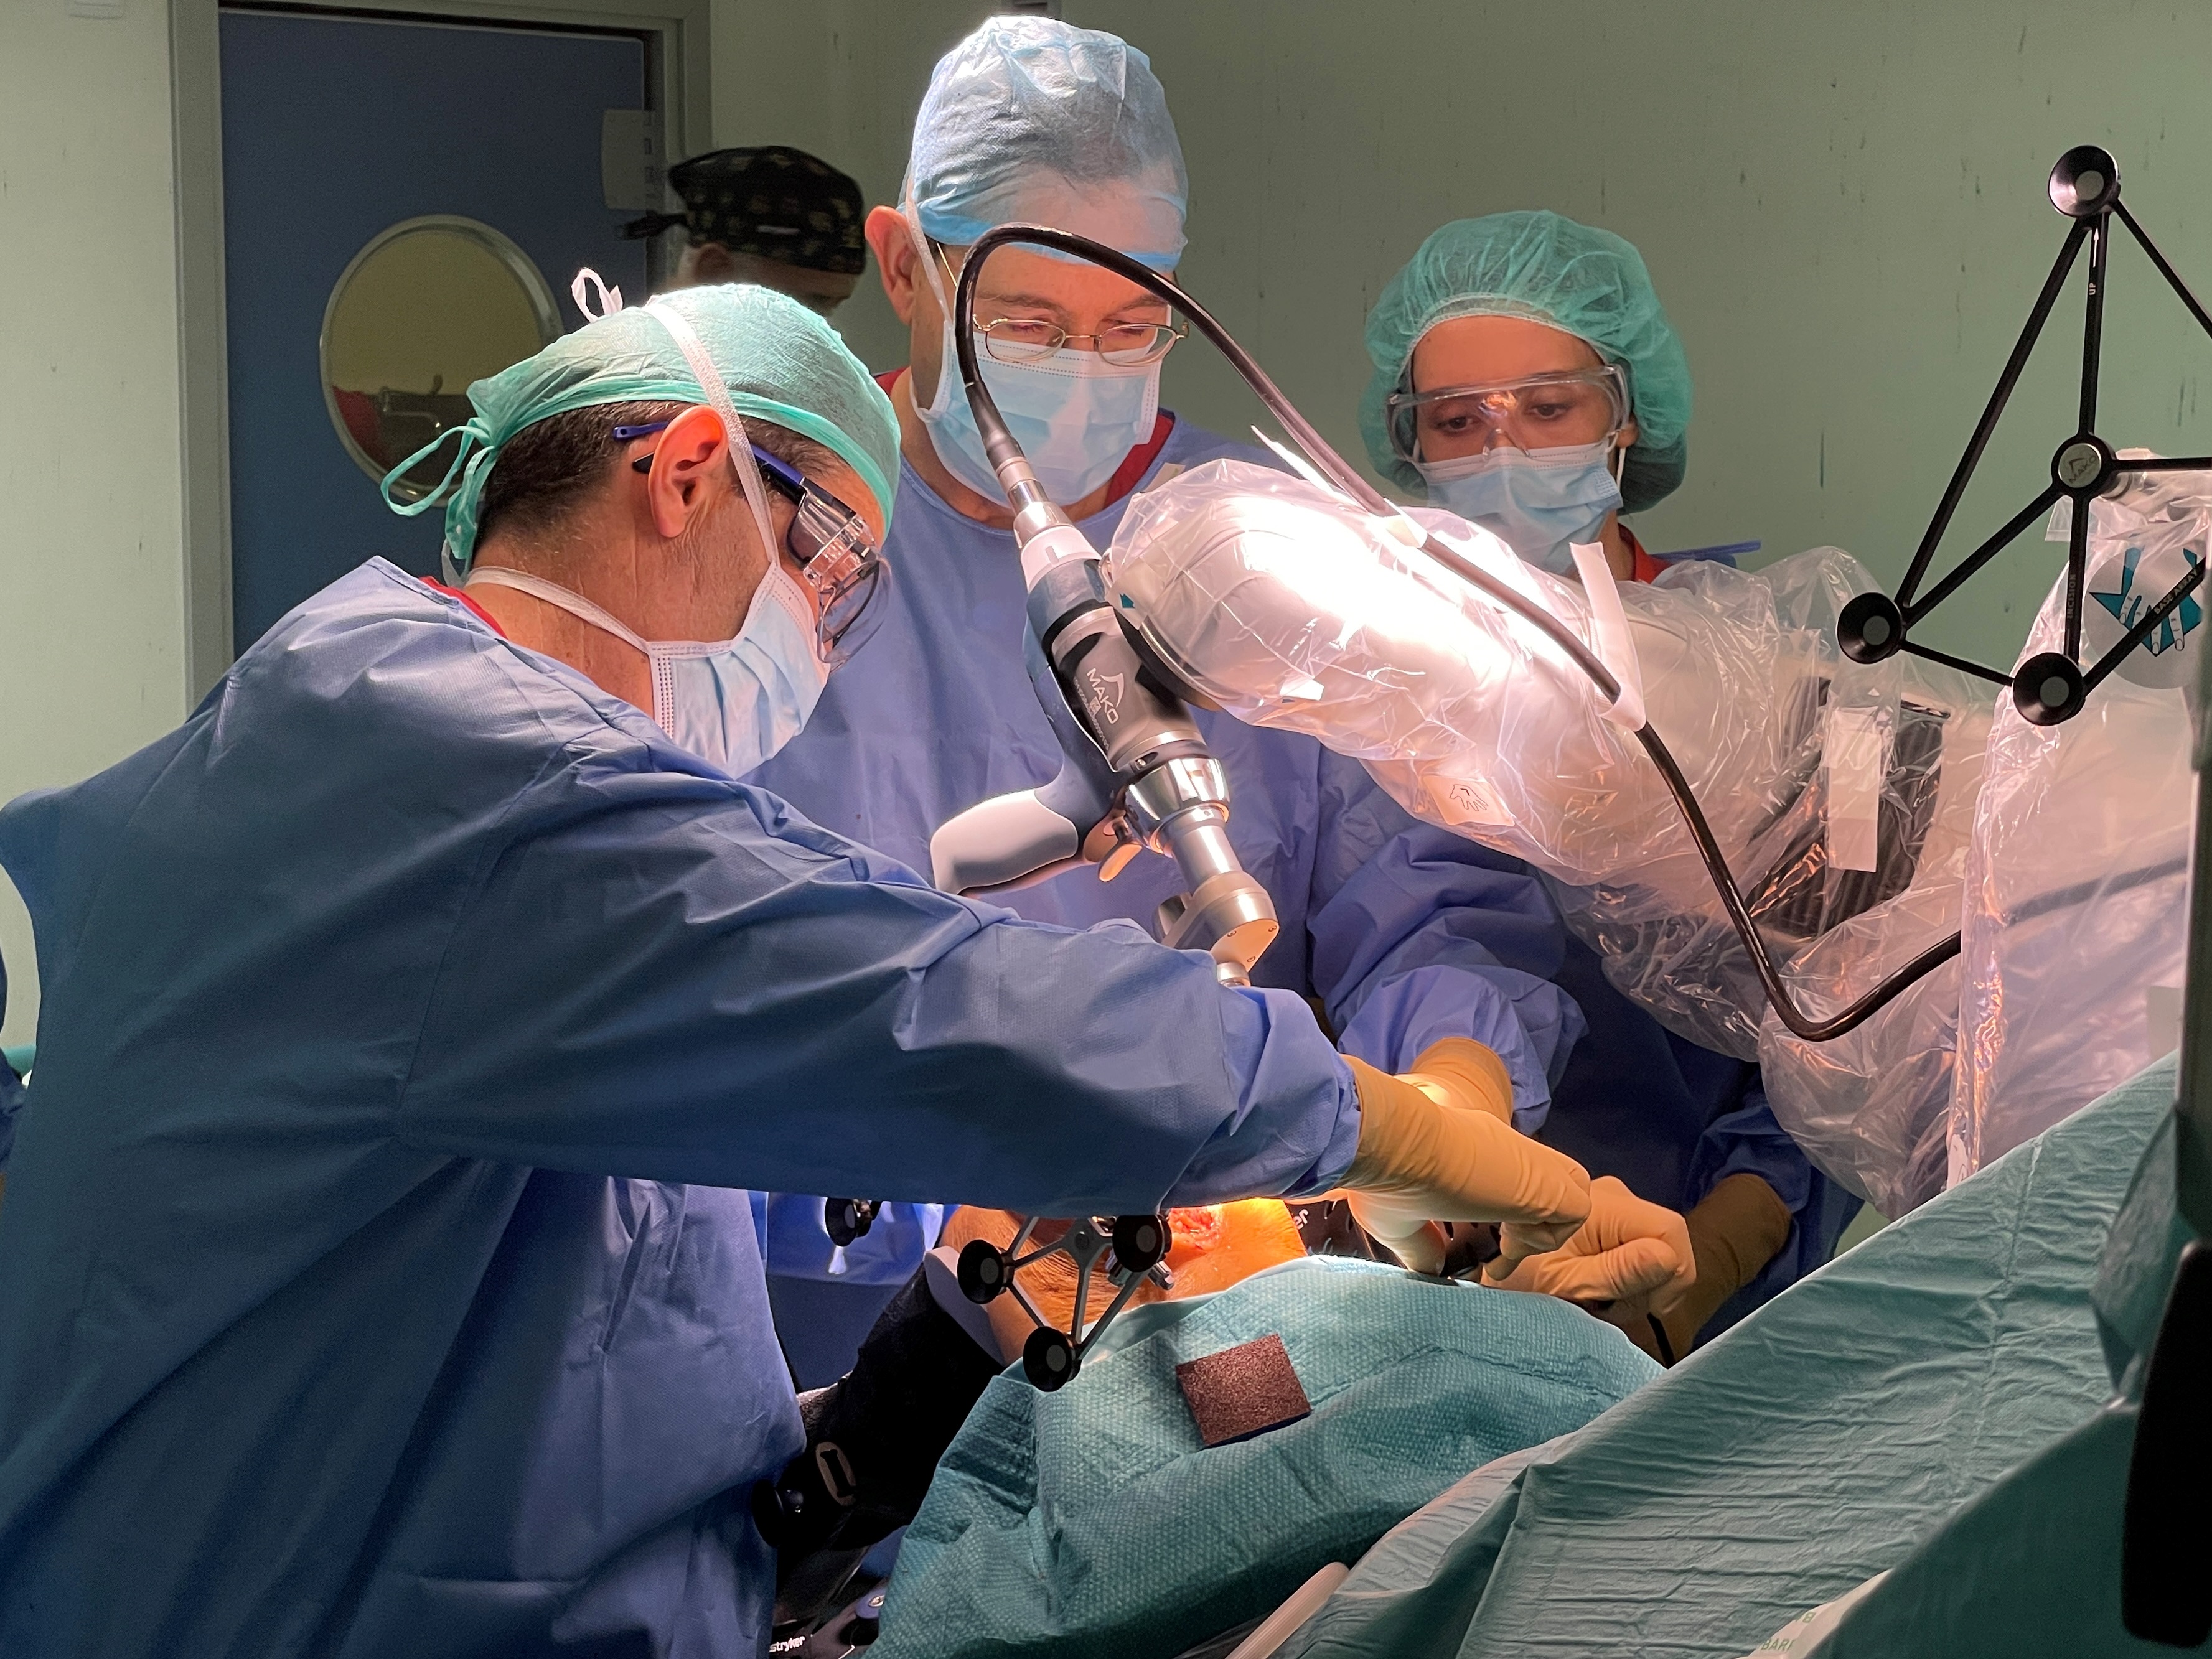 Cirugía robótica: “Manos de acero” para operar la rodilla de Concepción